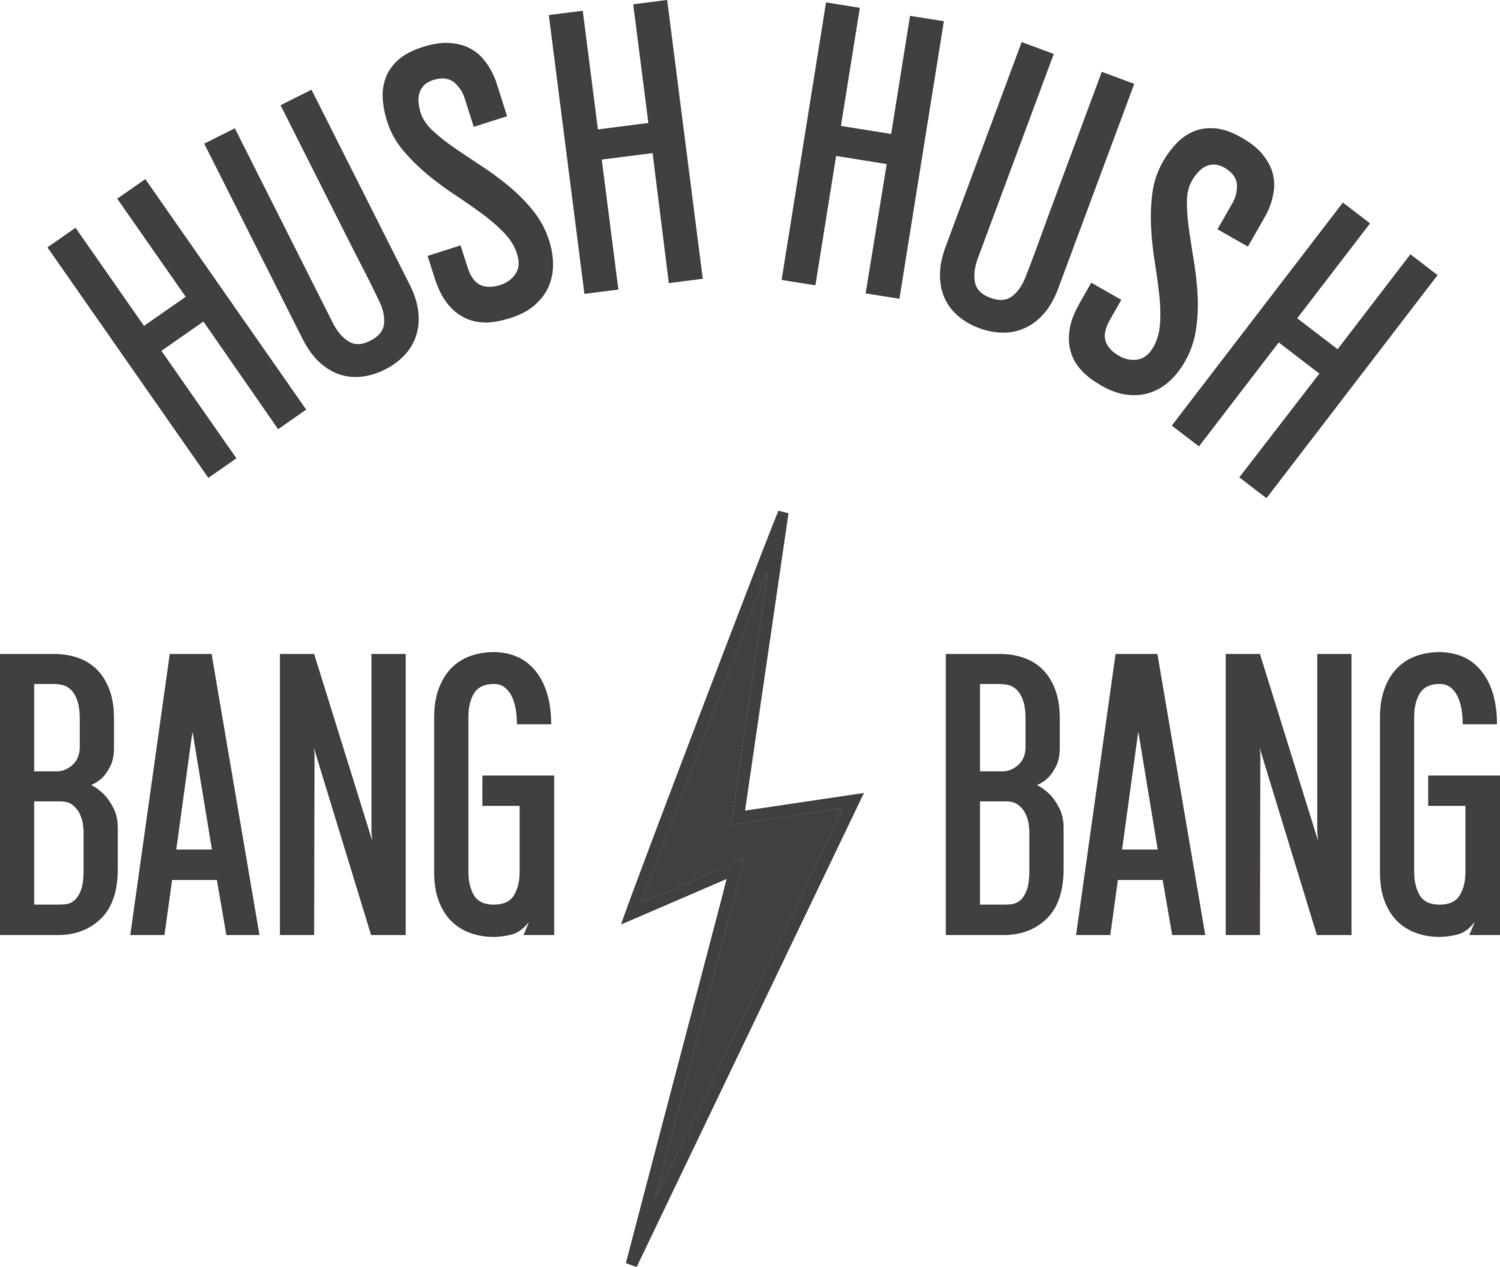 Hush Hush Bang Bang